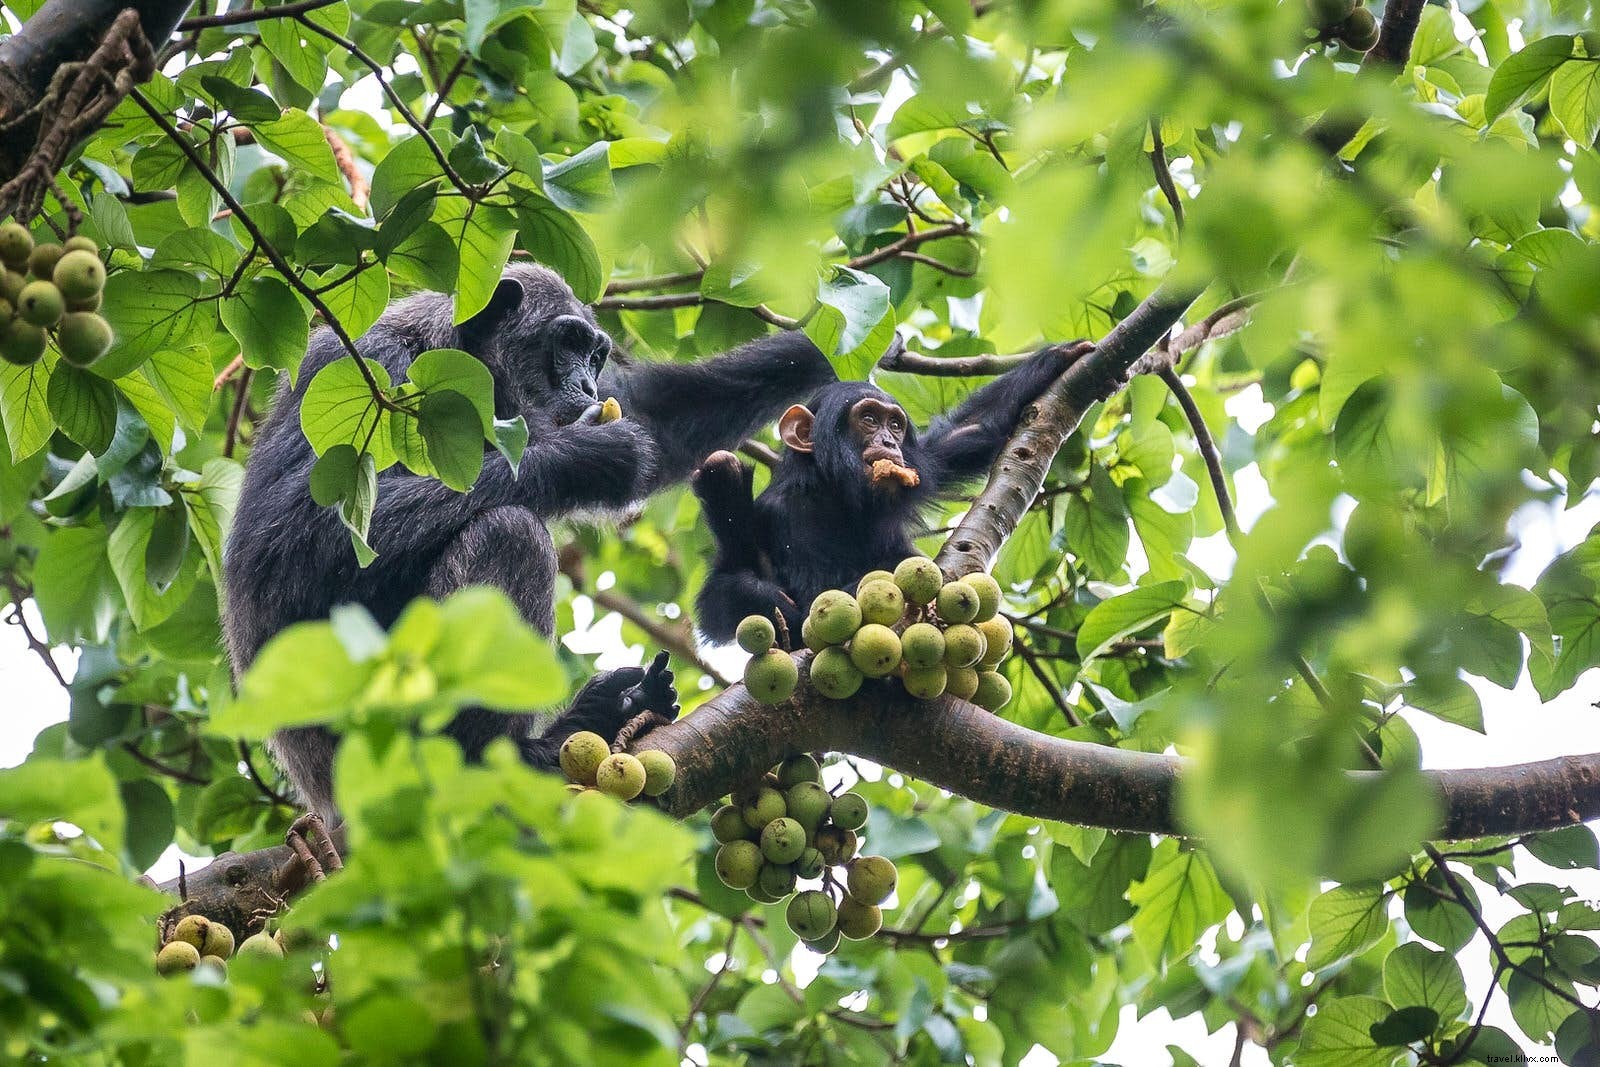 ウガンダでチンパンジーを見ることが世界で最も素晴らしい野生生物体験の1つである理由 